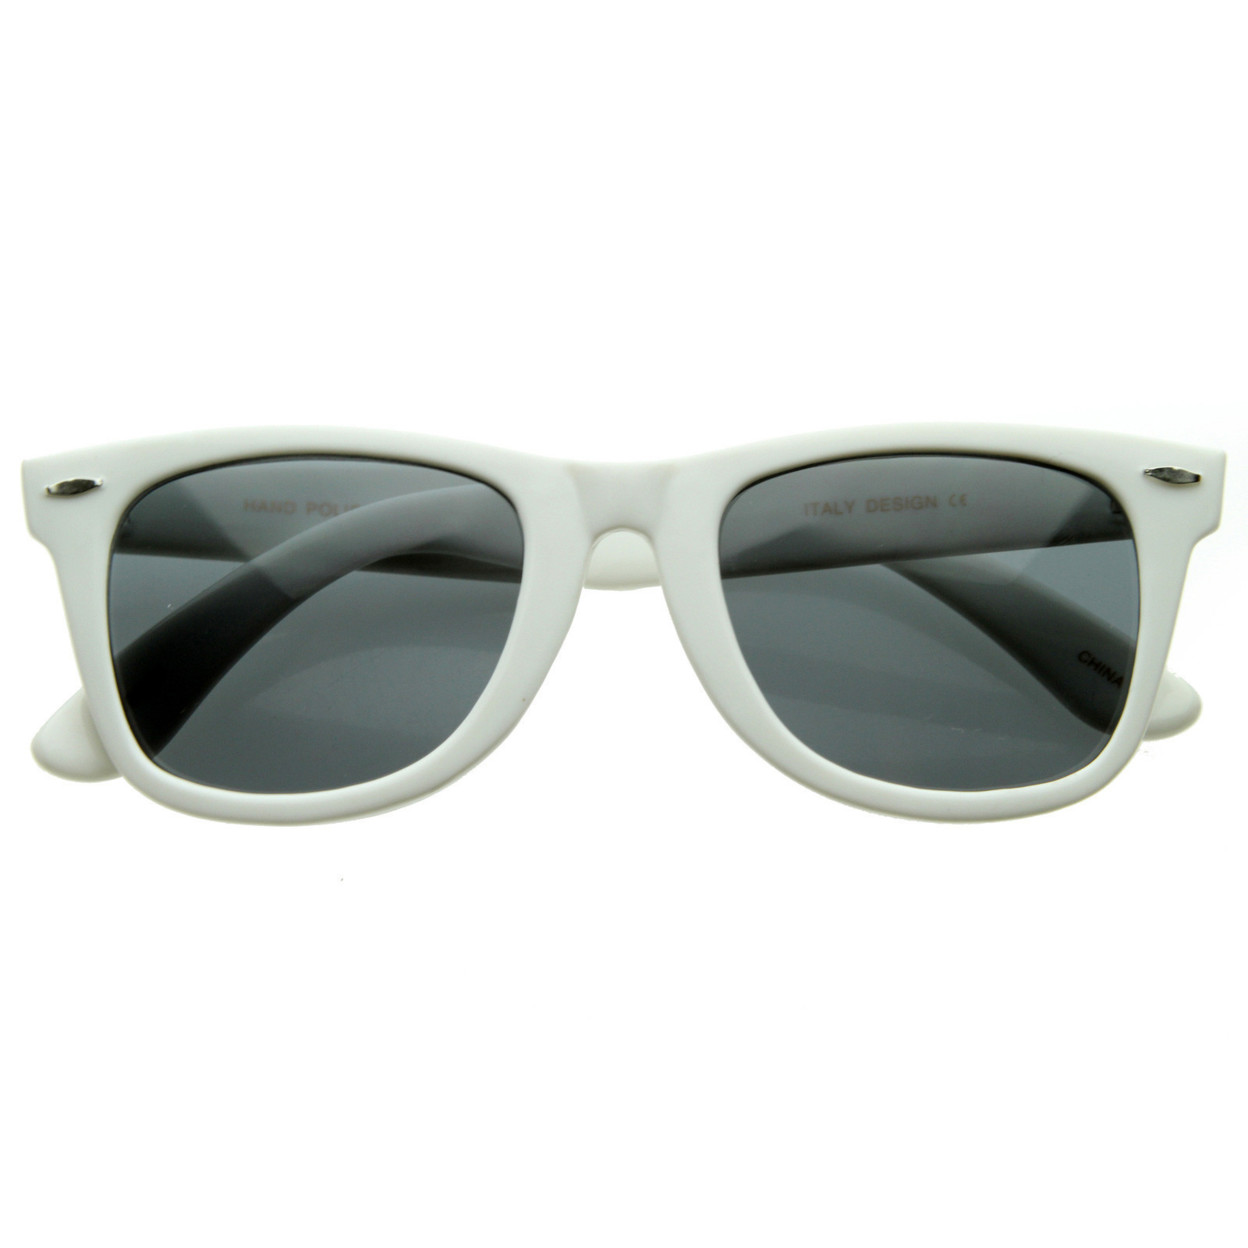 Classic Original Classic 80s Retro Horned Rim Style Sunglasses - 2394 - Black